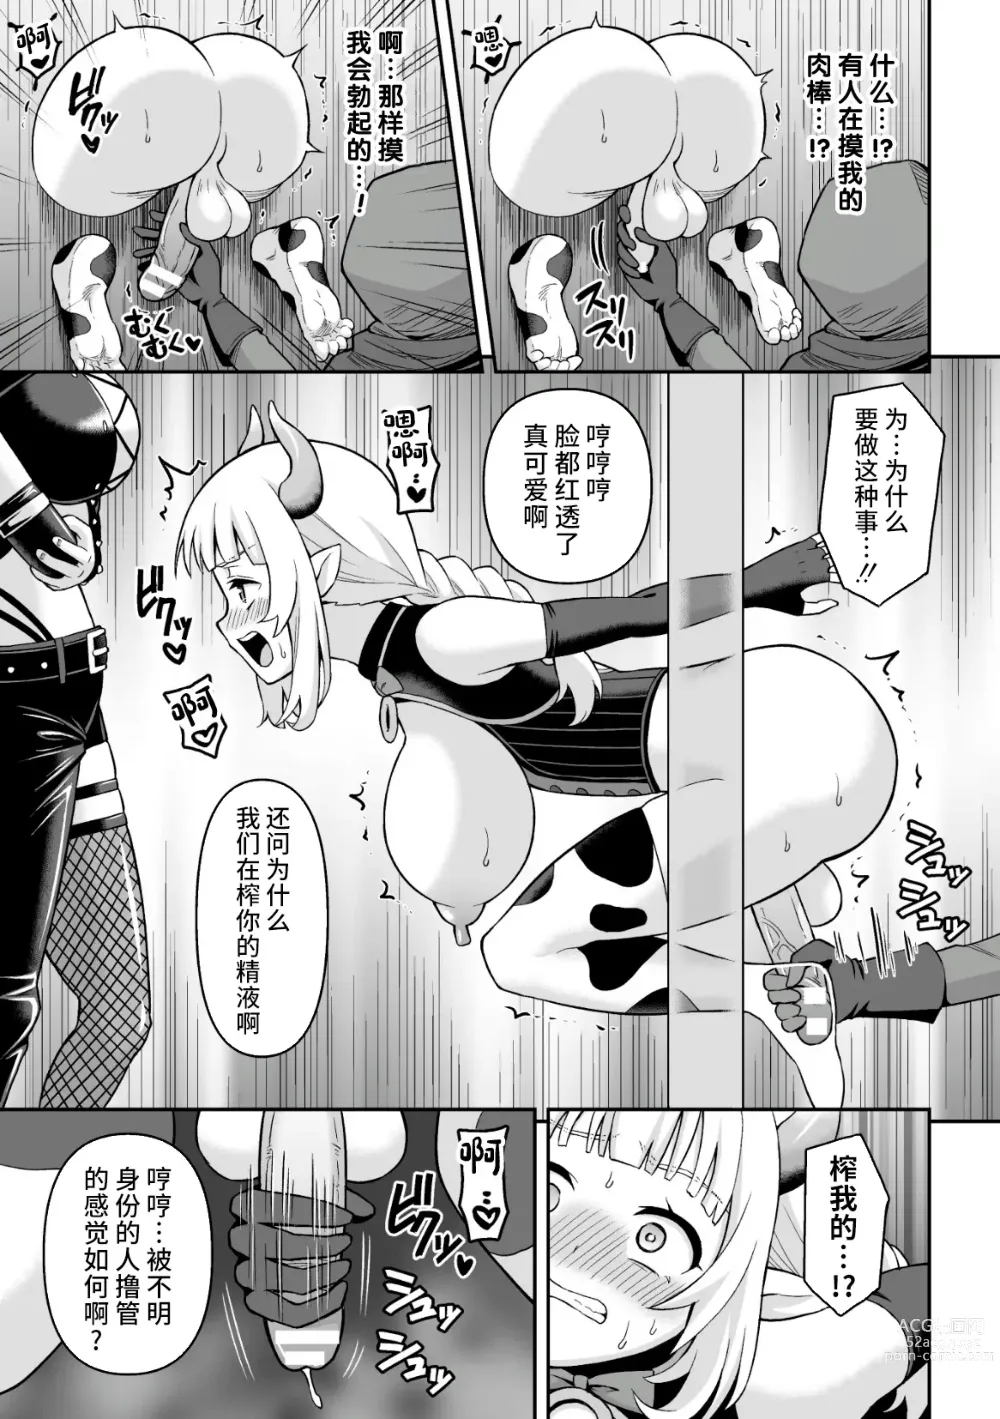 Page 7 of manga Ushi Musume no Kyousei Oschinpo Milk